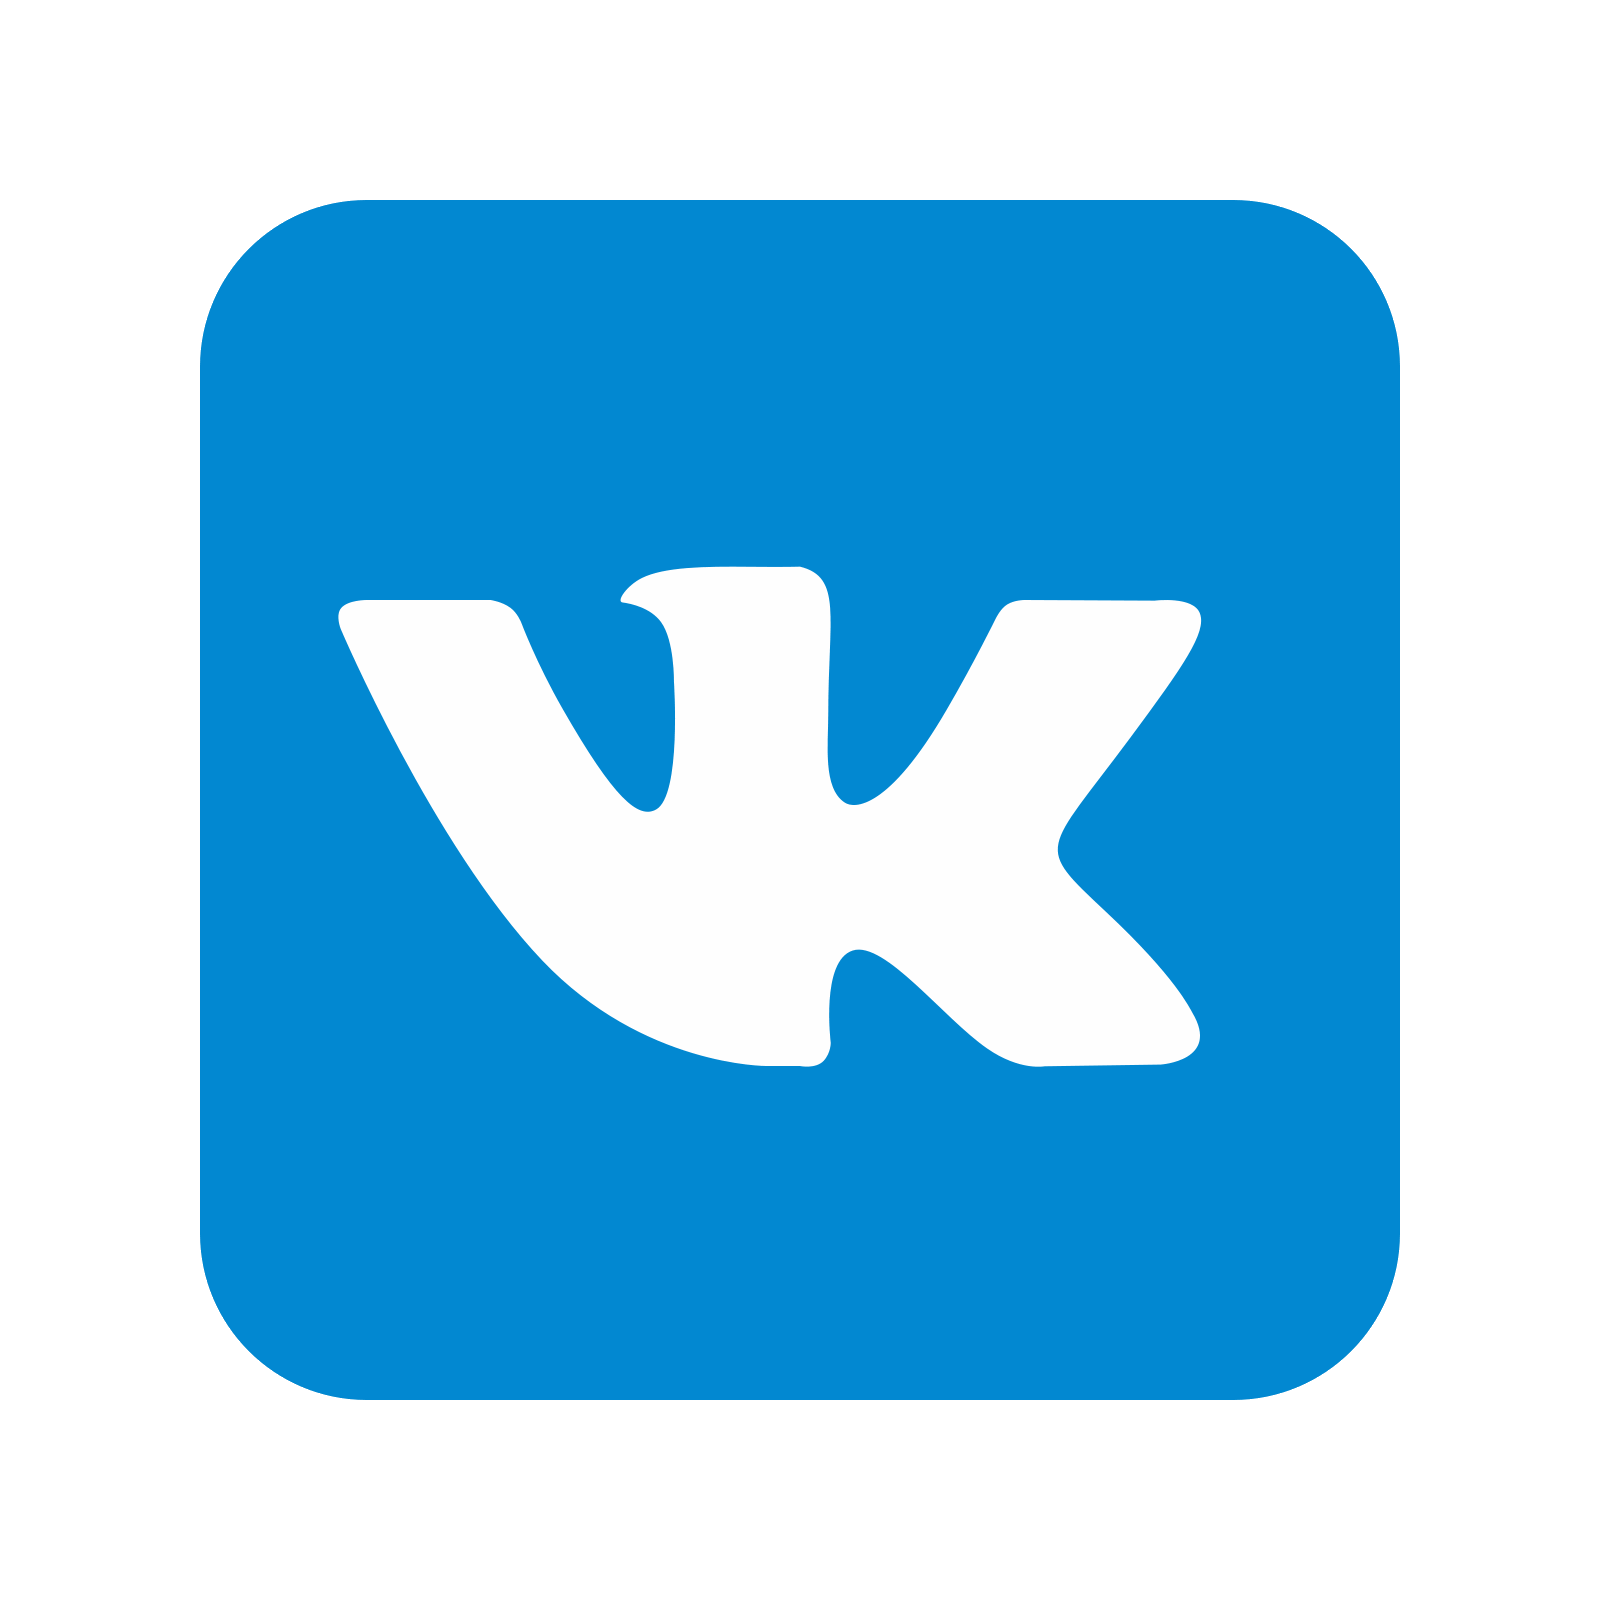 Vkontakte Logo PNG Clip Art HD Quality